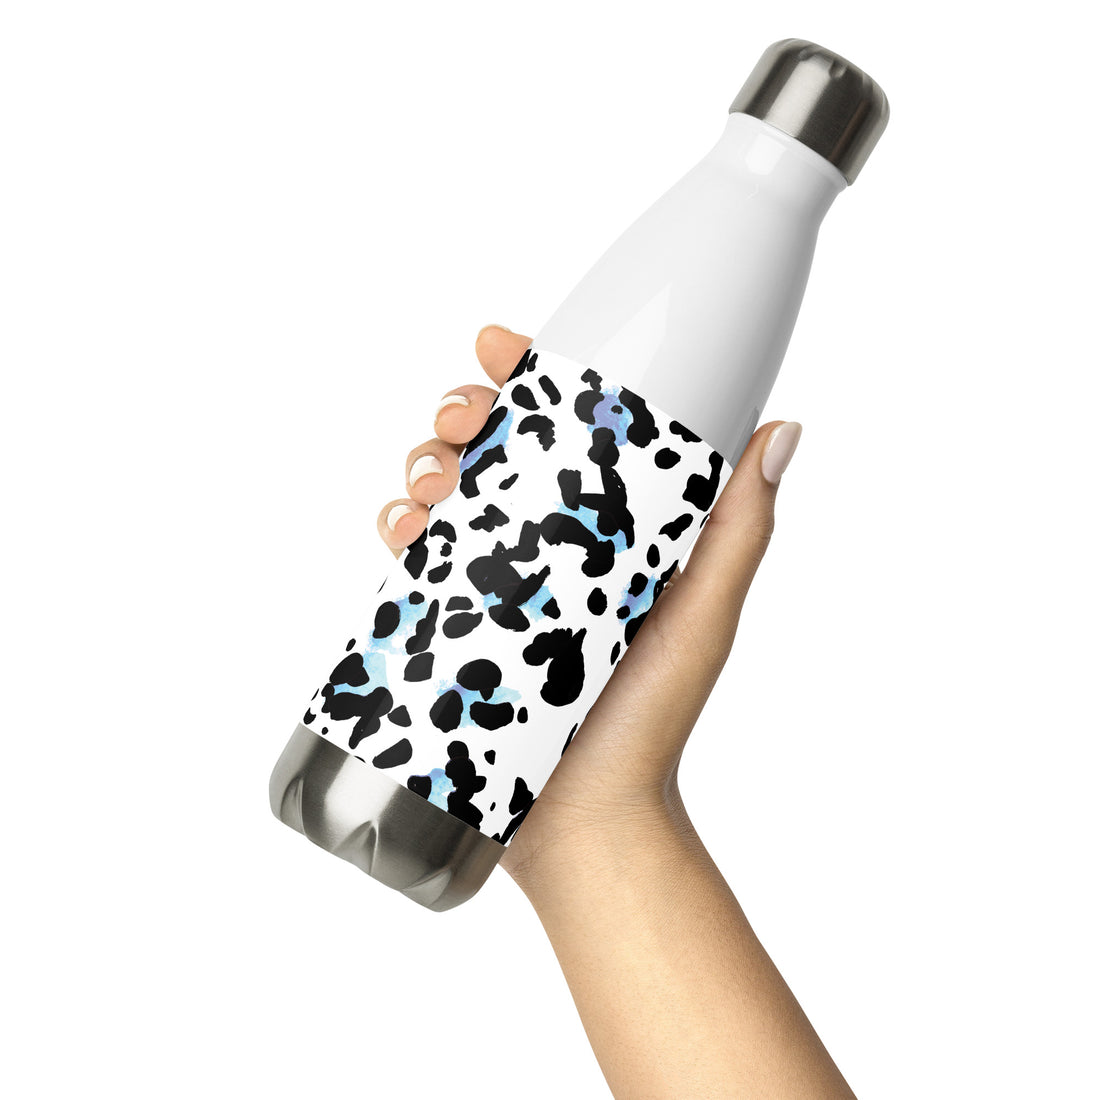 Monochrome Stainless Steel Water Bottle